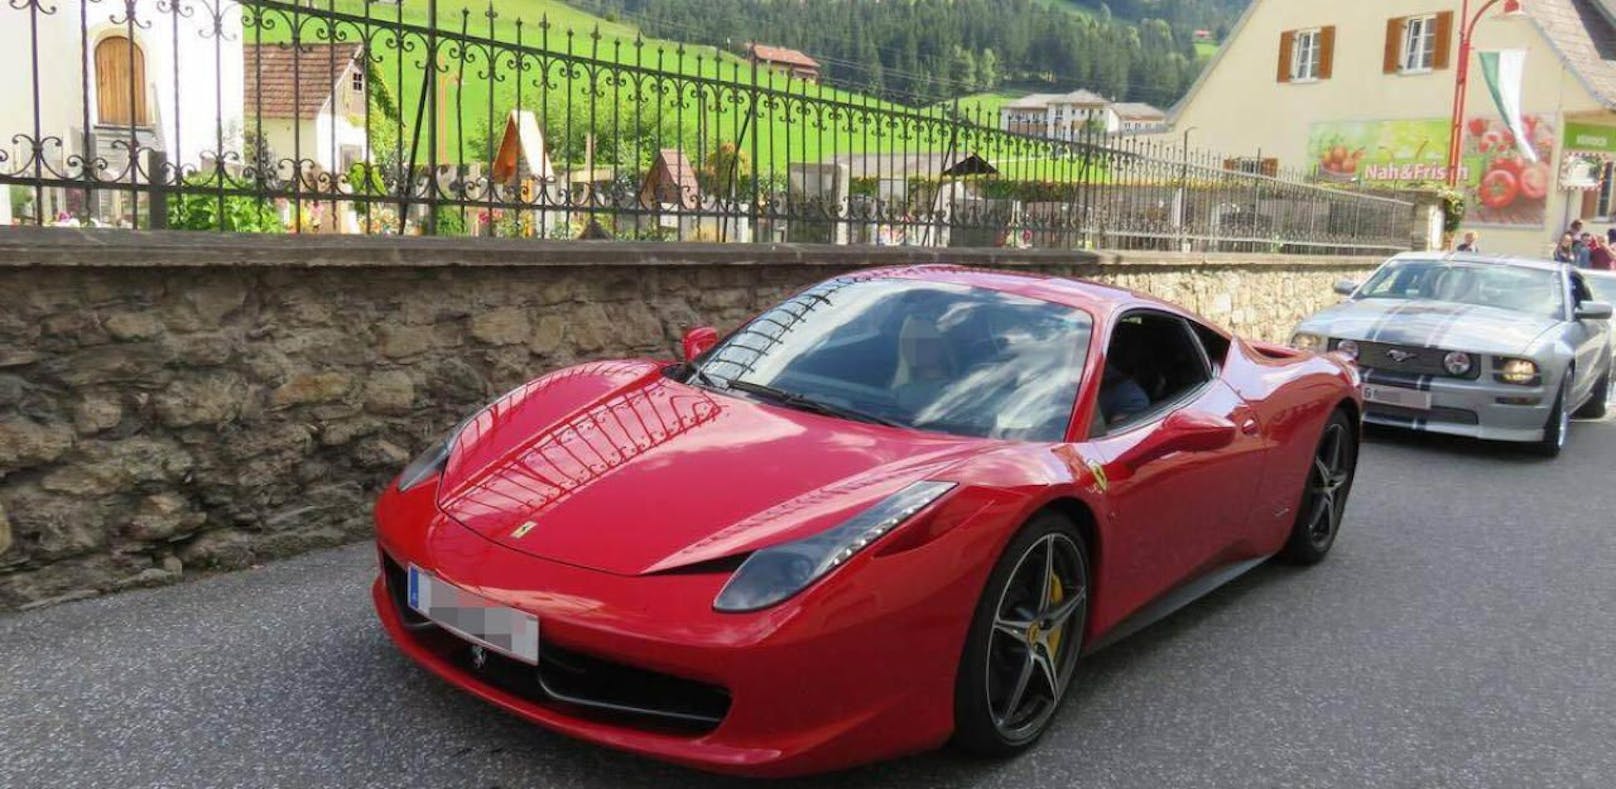 Dieser Ferrari 458 Italia wurde von dem Teenager gestohlen. 